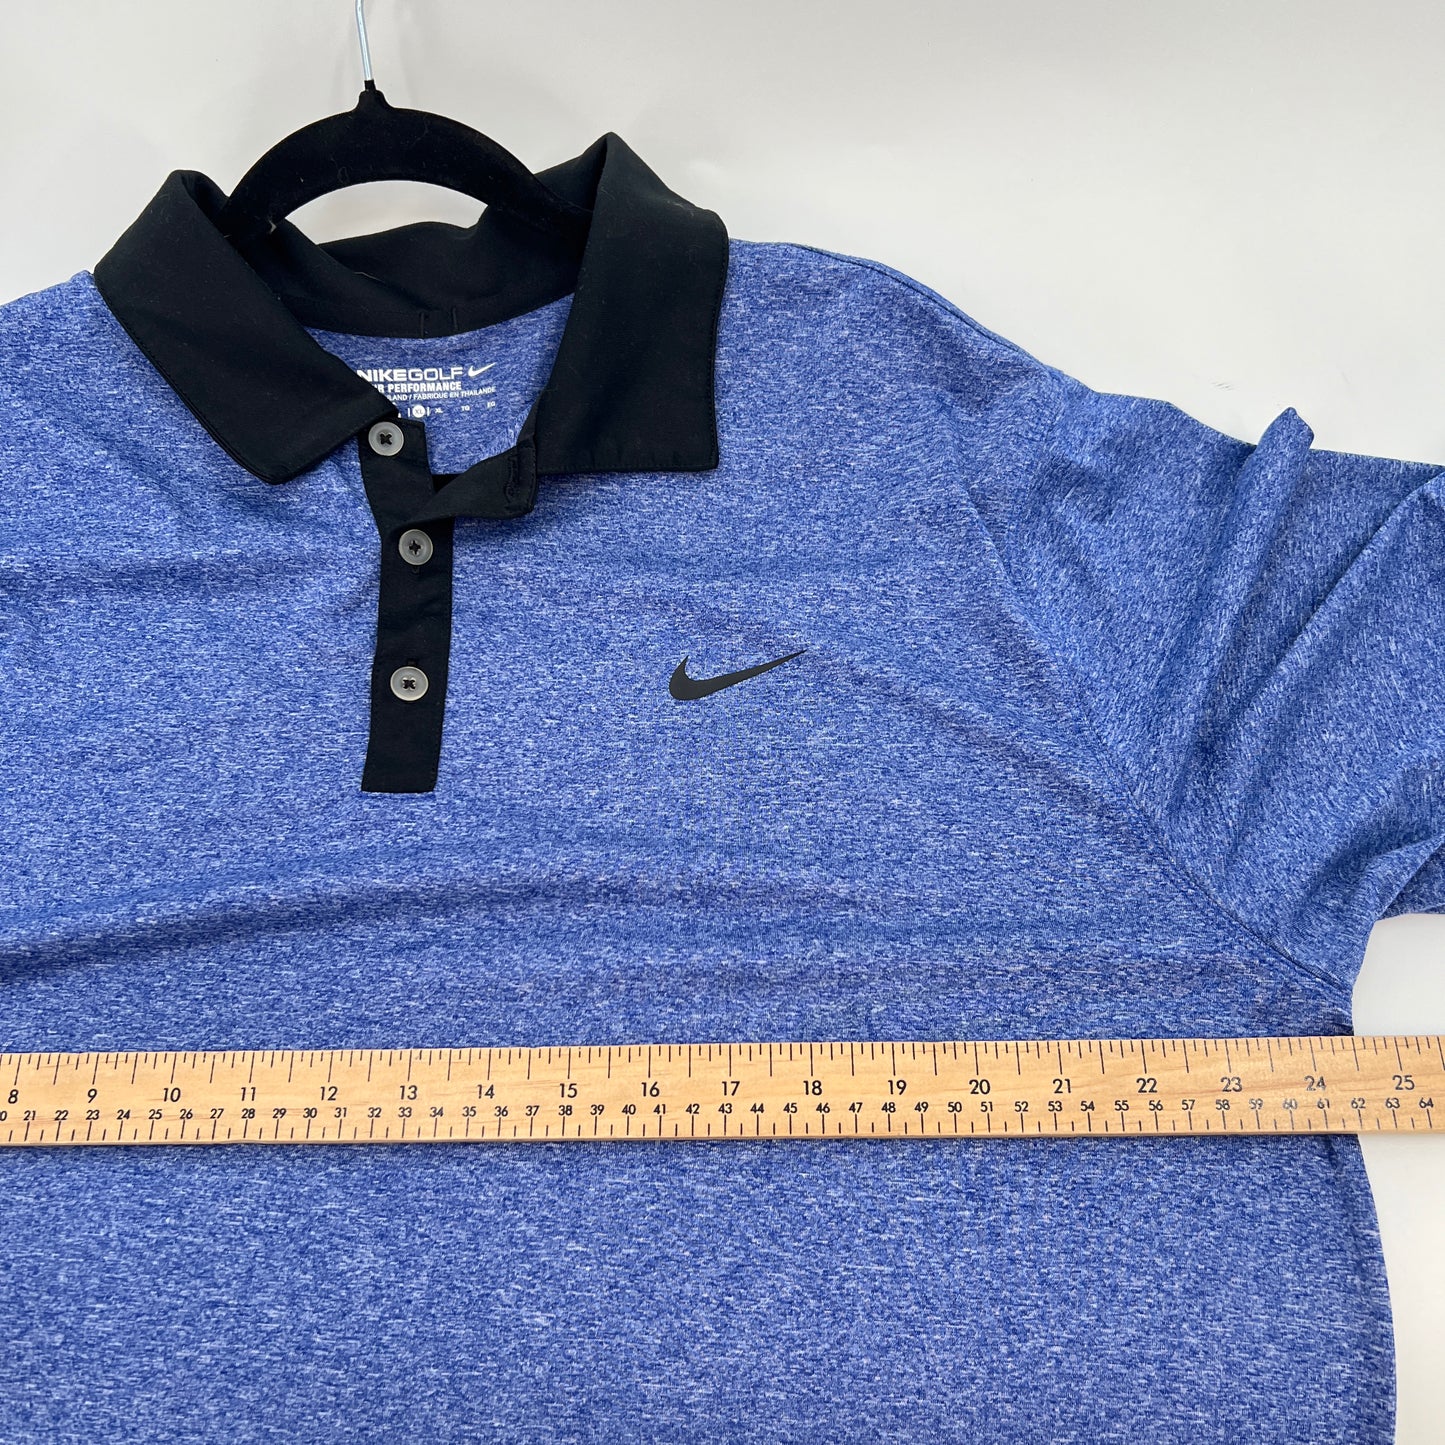 Nike Golf Polo Top XL